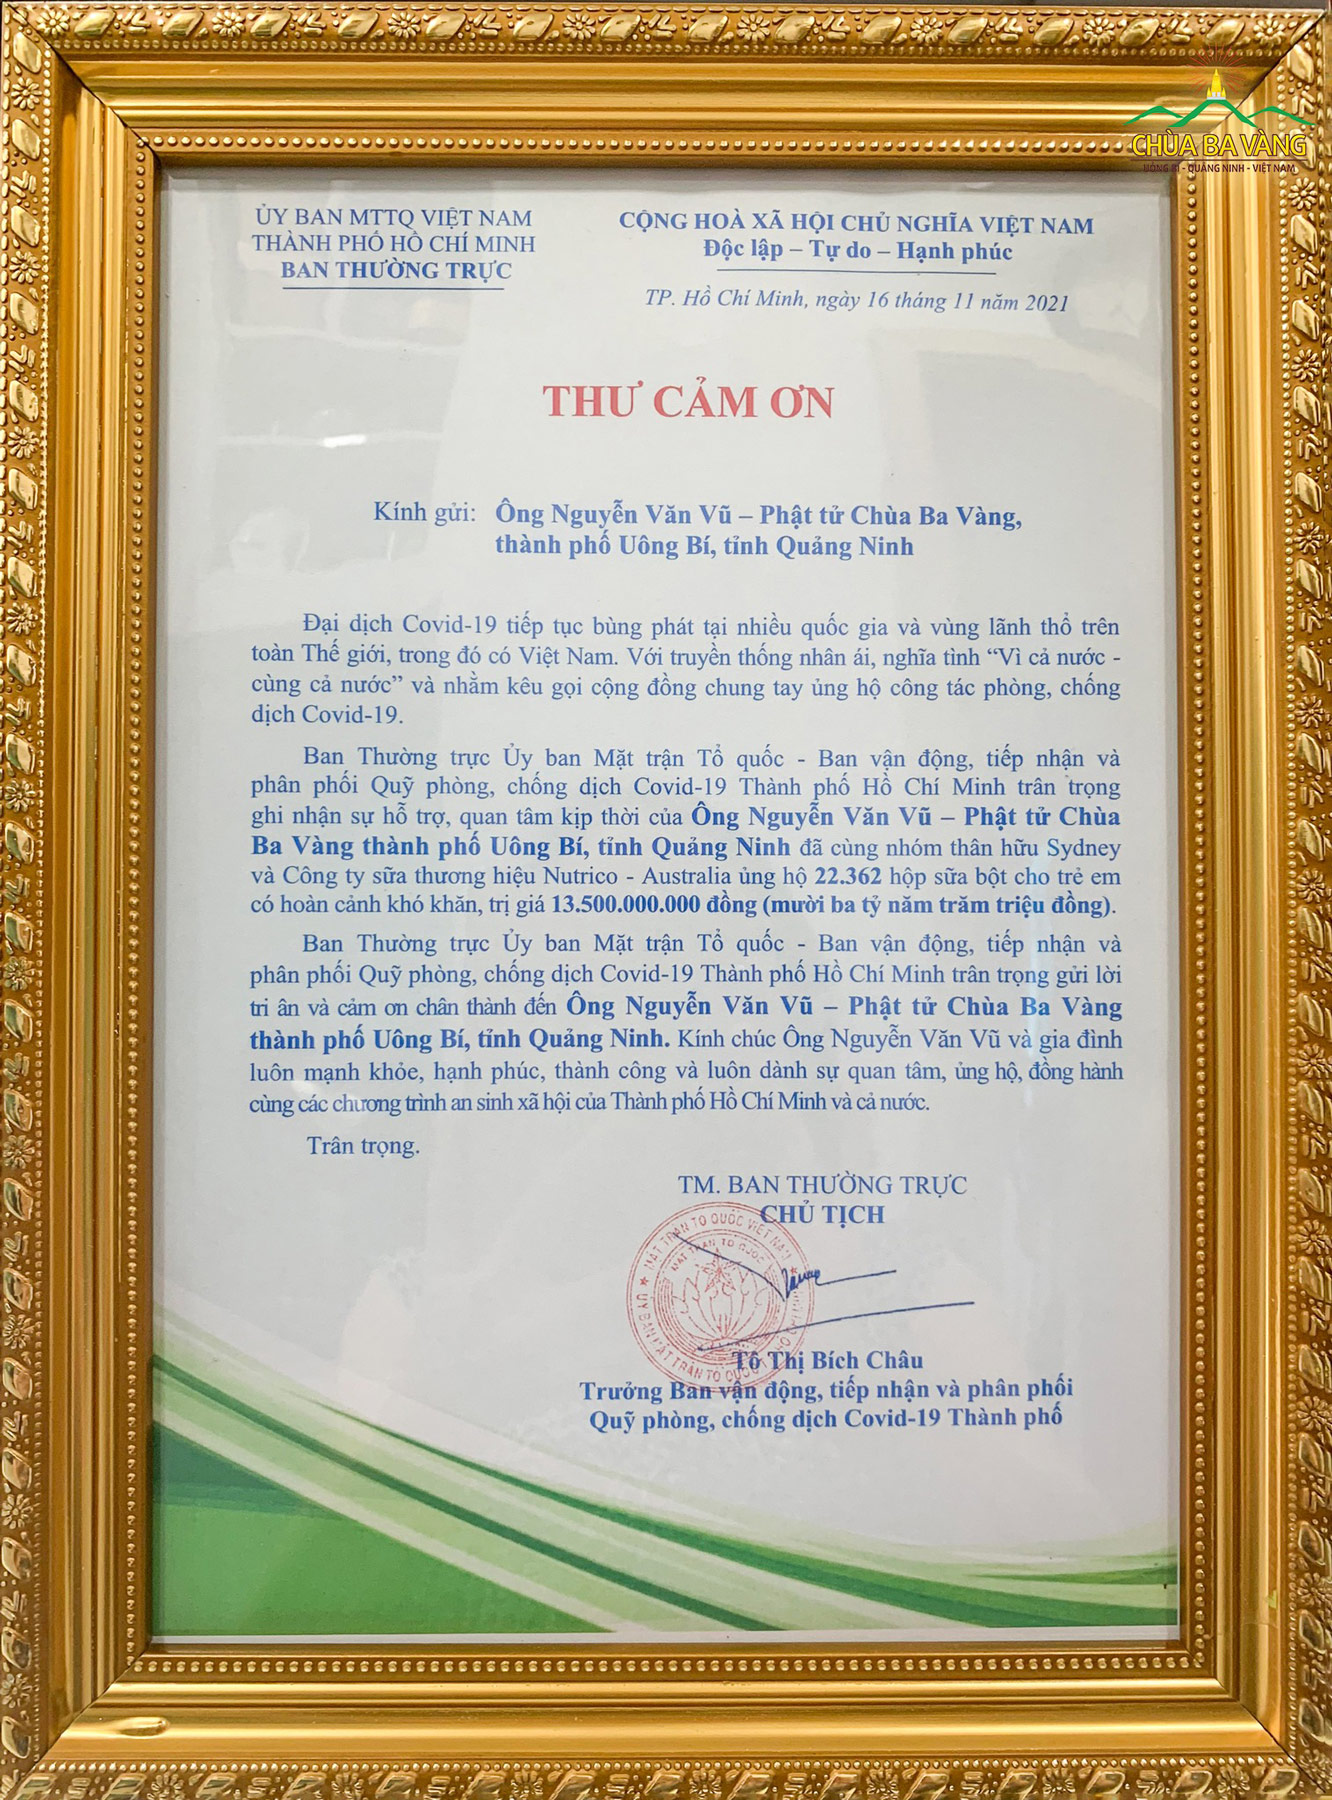 Ủy ban MTTQVN TP. Hồ Chí Minh gửi thư cảm ơn đến ông Nguyễn Văn Vũ - Phật tử chùa Ba Vàng